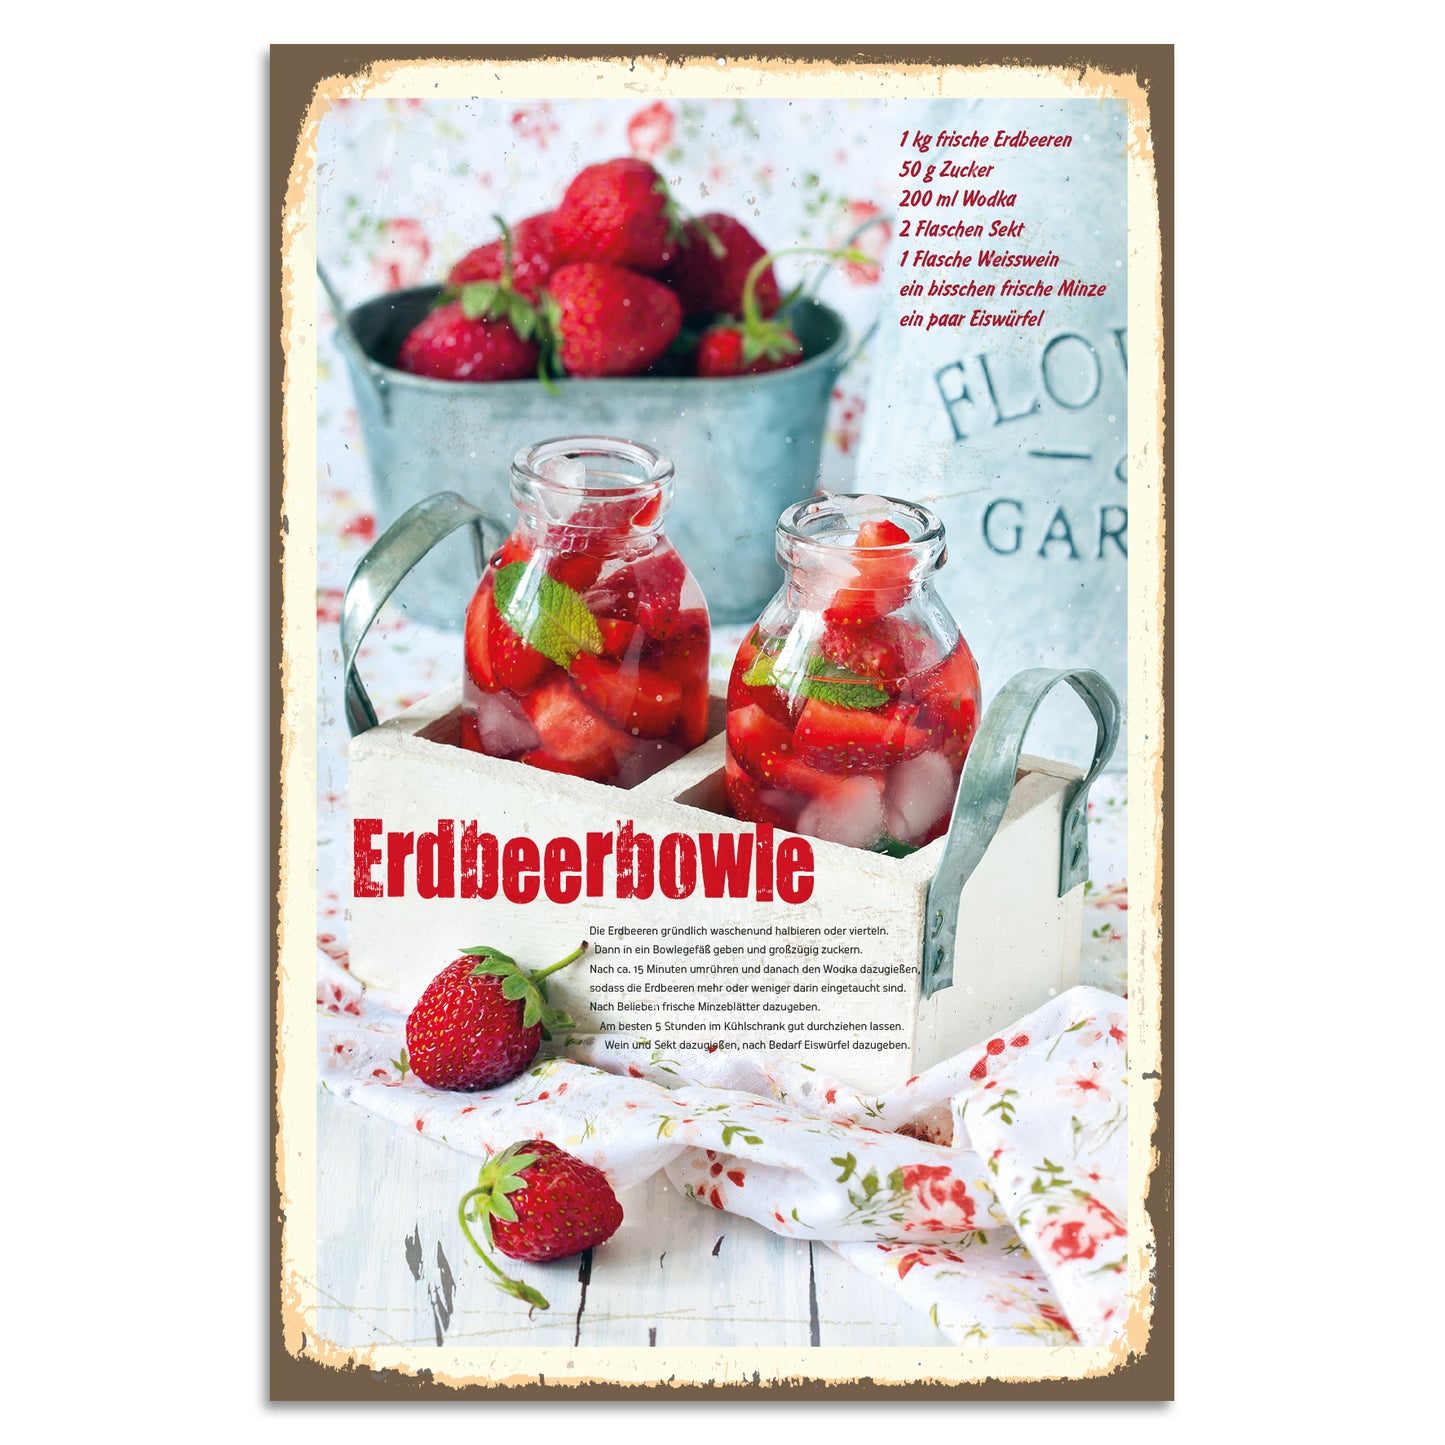 Blechschild Erdbeerbowle-Rezept